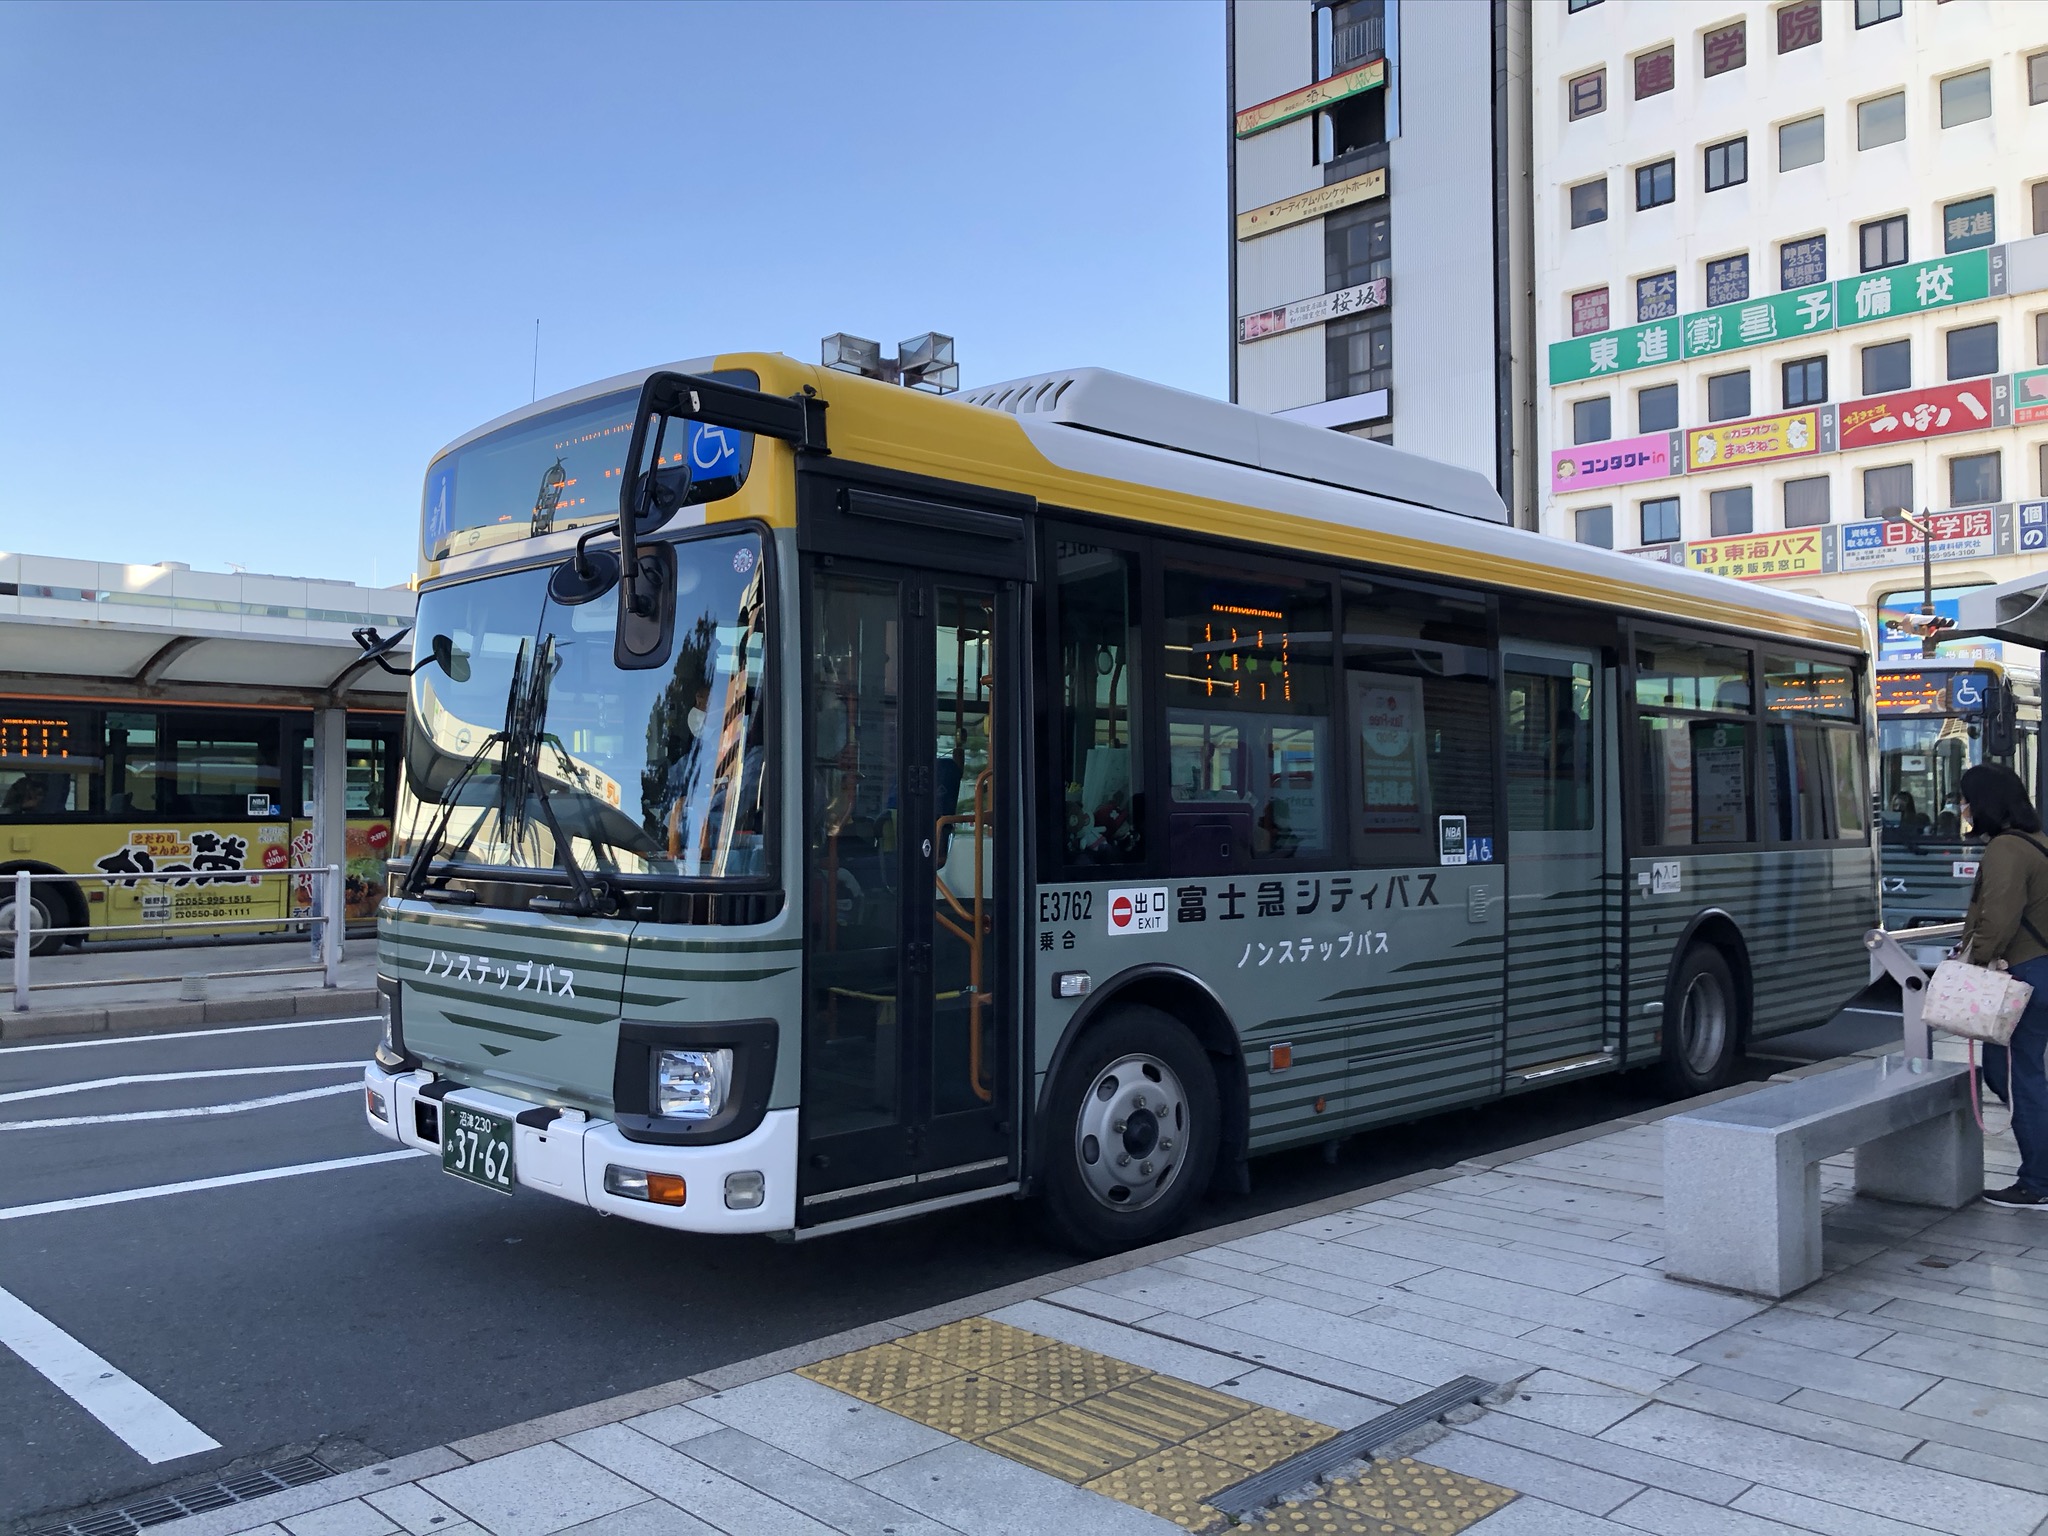 バスの走行位置と混雑度がスマホで分かる 富士急シティバス バスキタ リアルタイム混雑情報提供システム 4 19 月 より導入 富士急行のプレスリリース